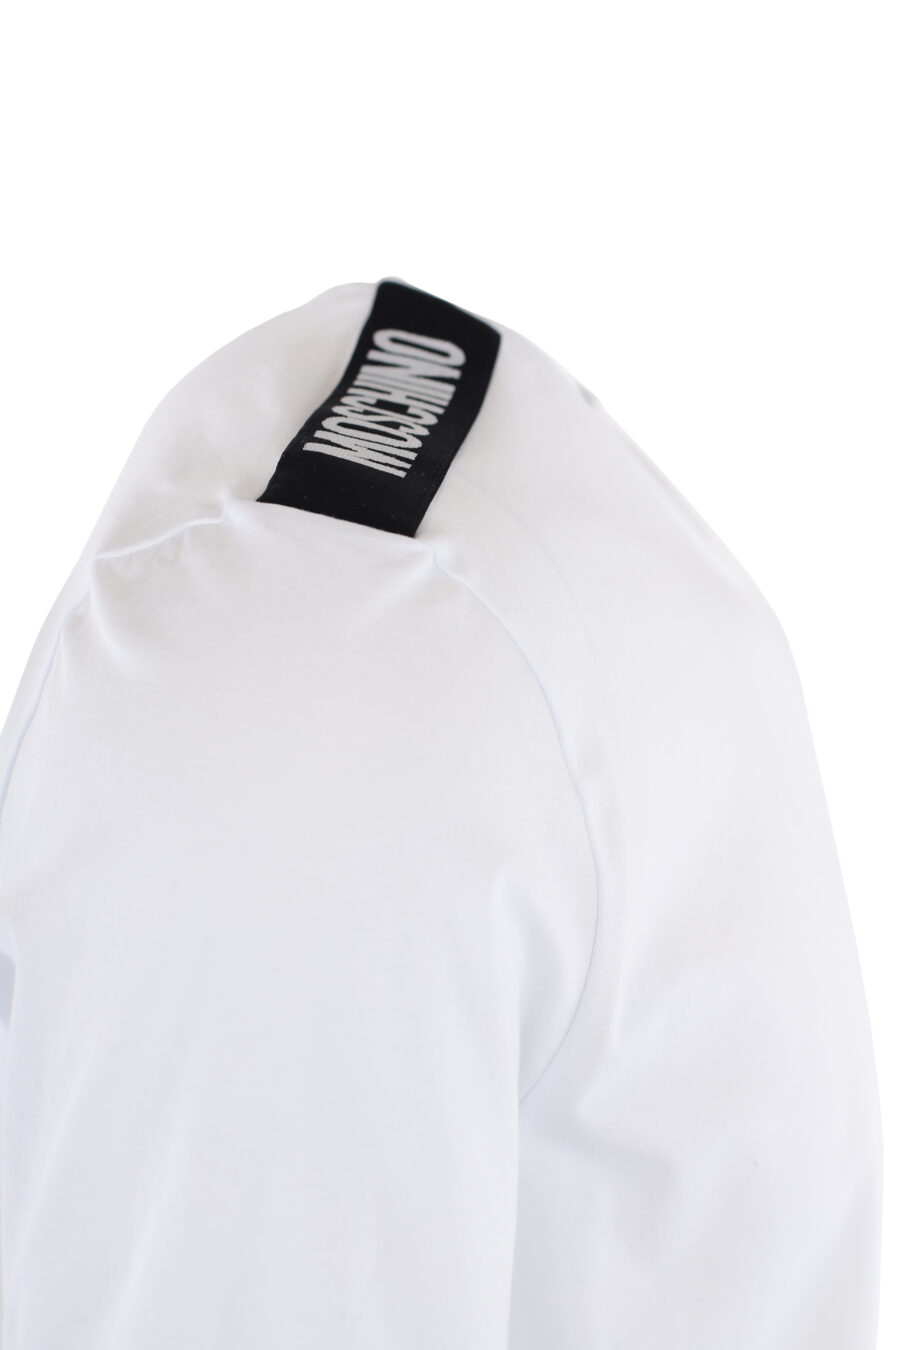 Pack de dos camisetas blancas con logo en cinta en hombros - IMG 7317